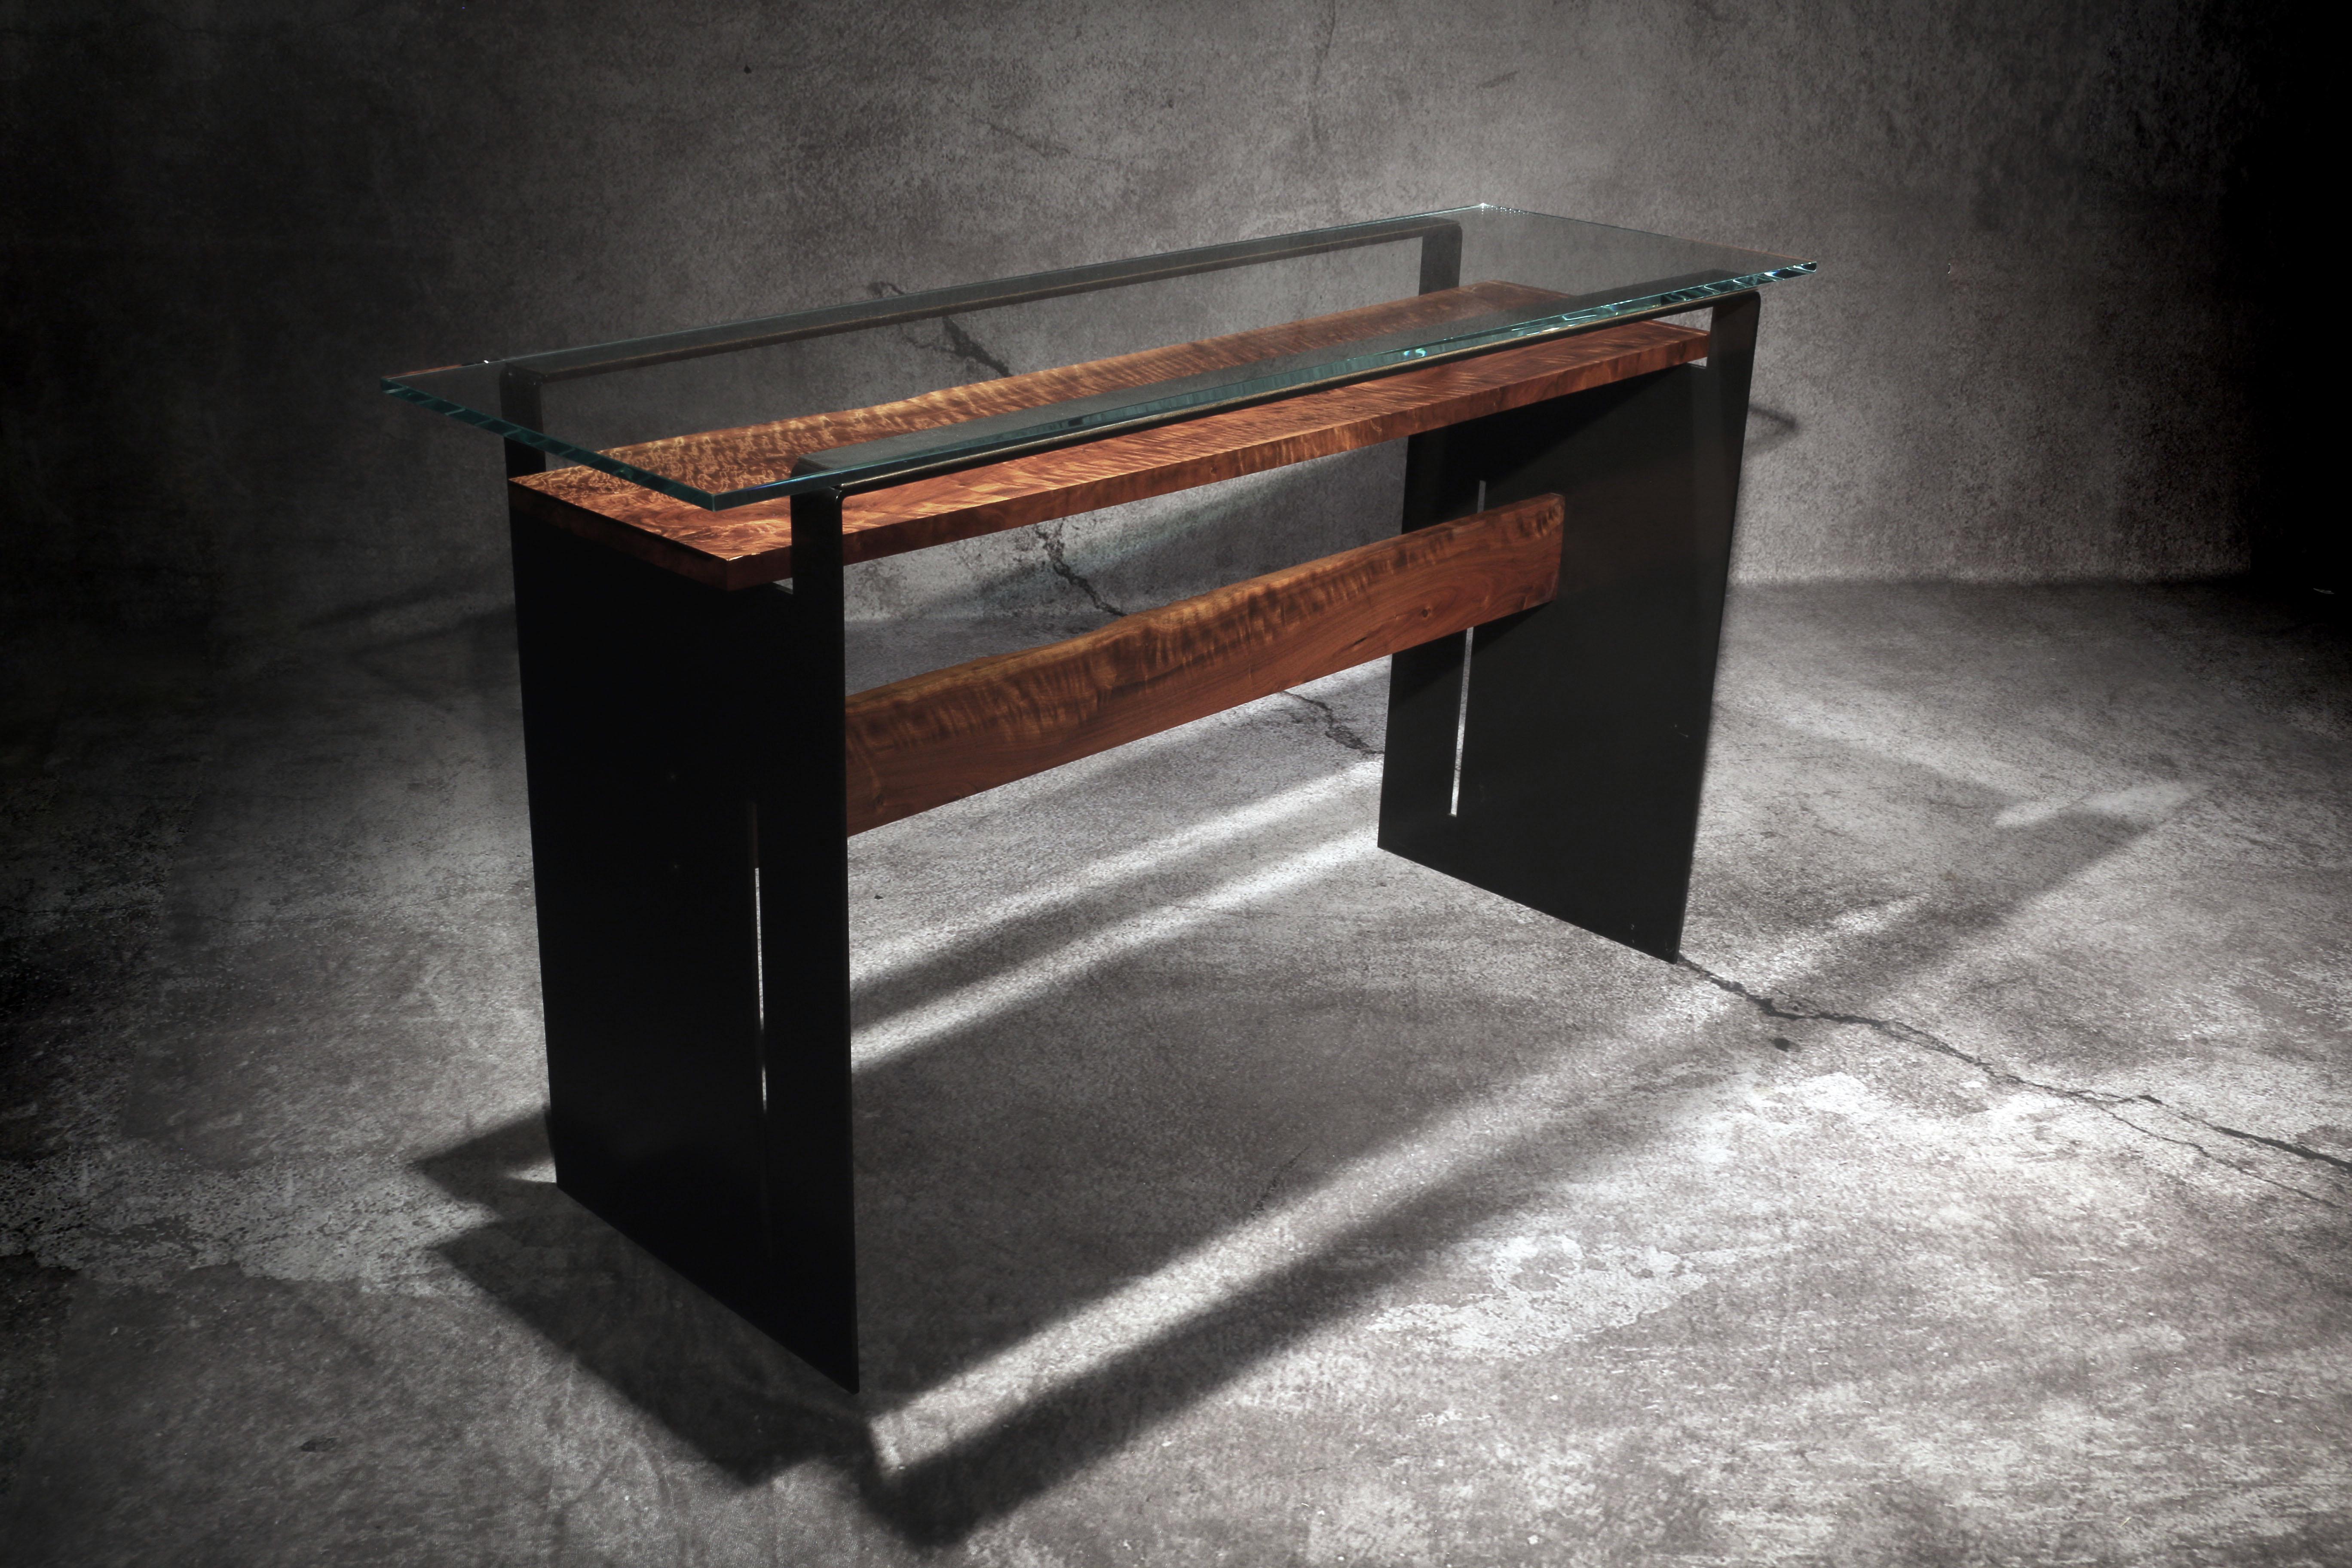 La table Tiger est conçue, dessinée et créée par l'artiste et architecte primé Michael Olshefski de Primal Modern. Il s'inspire à la fois de la complexité et de la simplicité de la nature, et de l'origami japonais. Cette table console moderne est